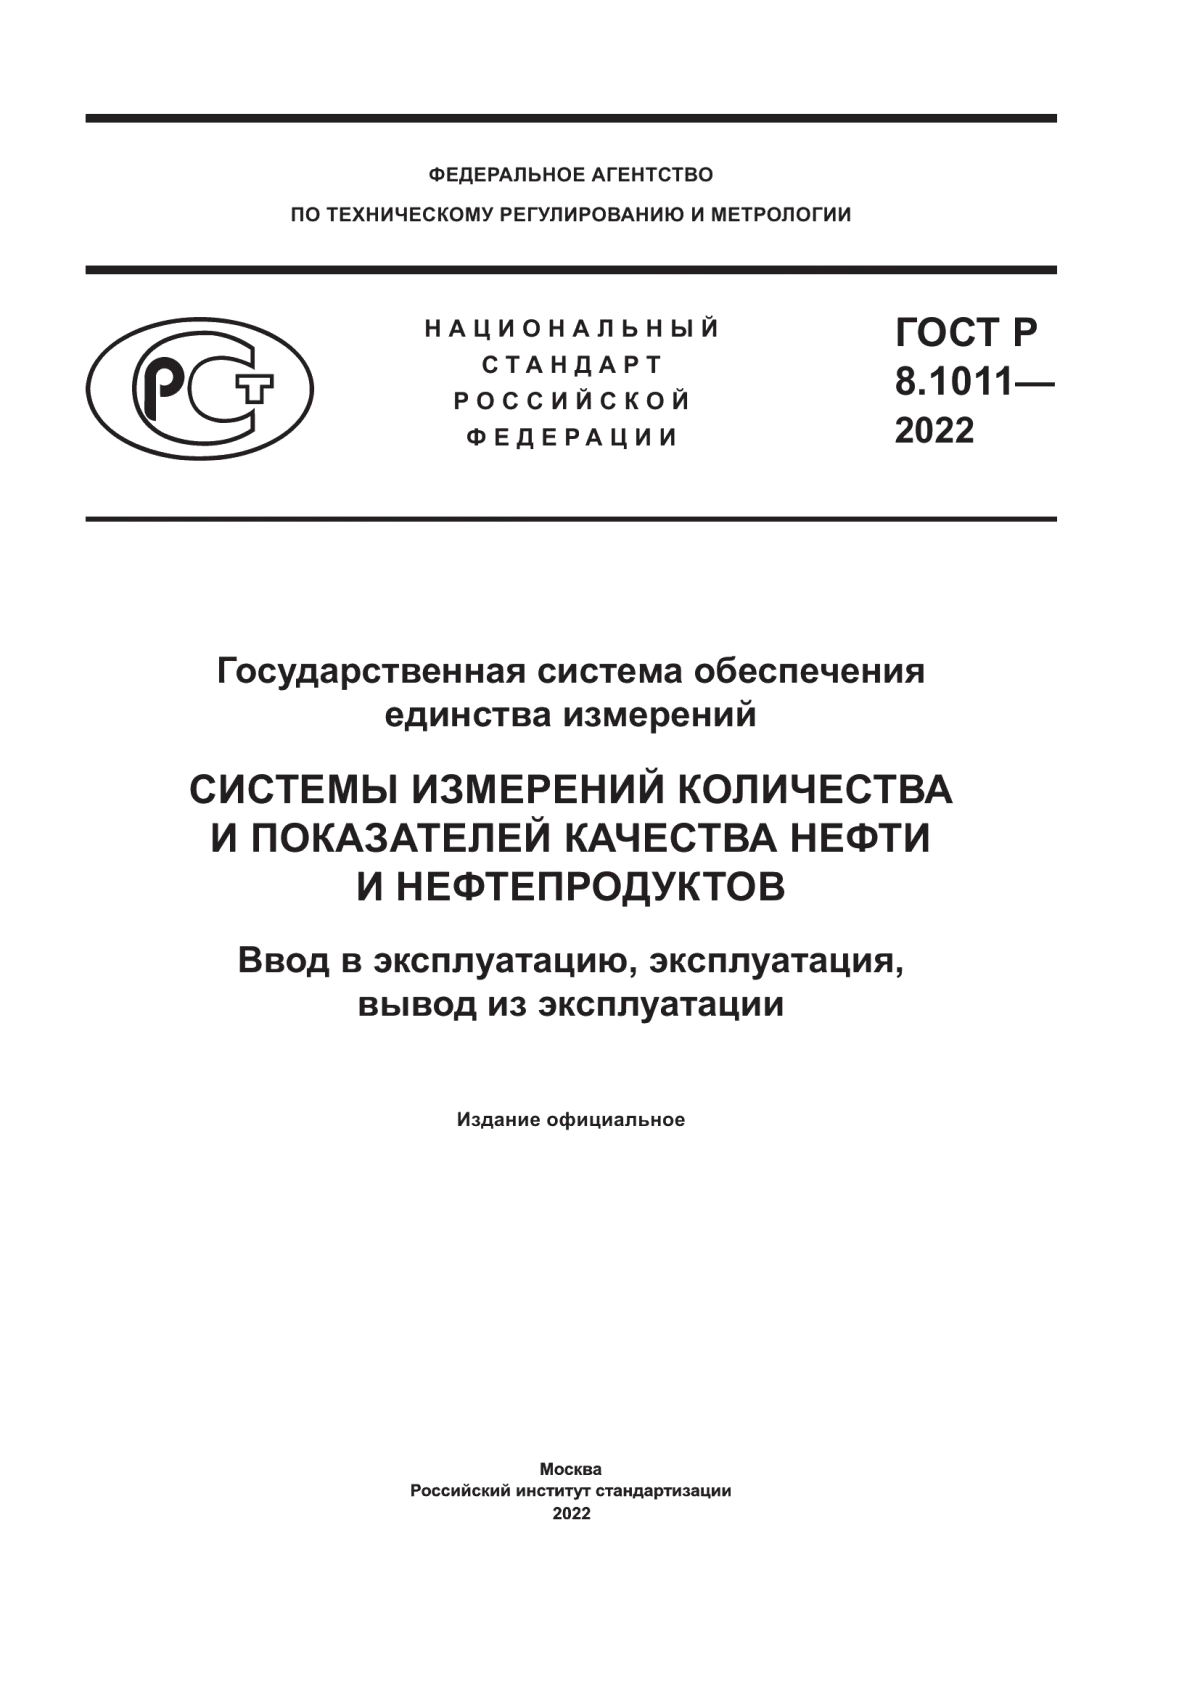 ГОСТ Р 8.1011-2022 Государственная Система Обеспечения Единства.